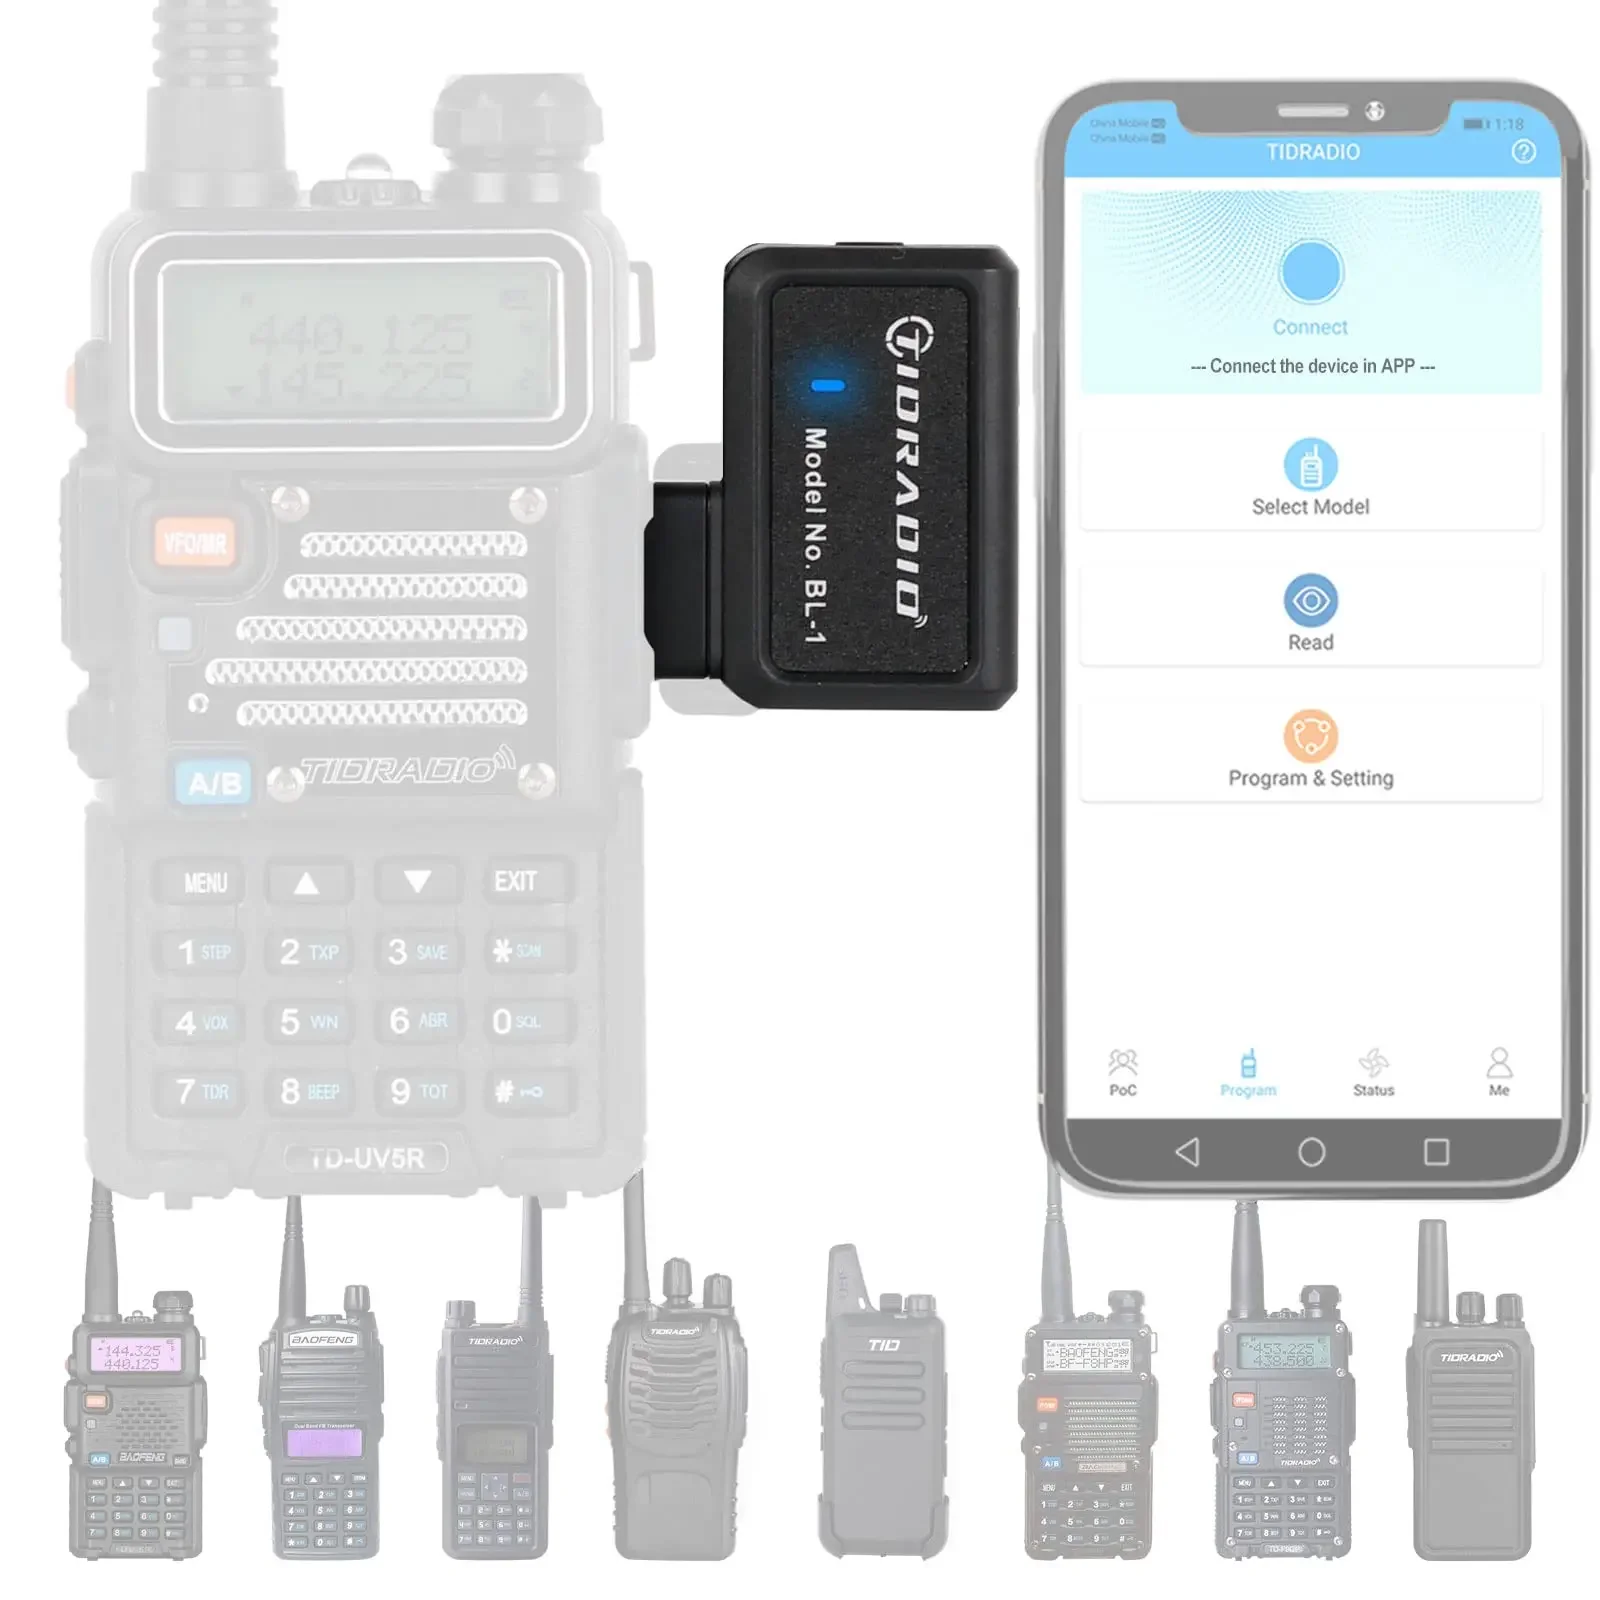  Walkie Talkie Беспроводной программатор Телефон Программирование приложения для Baofeng UV 5R BF-888S Несколько моделей Без драйвера Проблема с драйвером Кабель Любительское радио